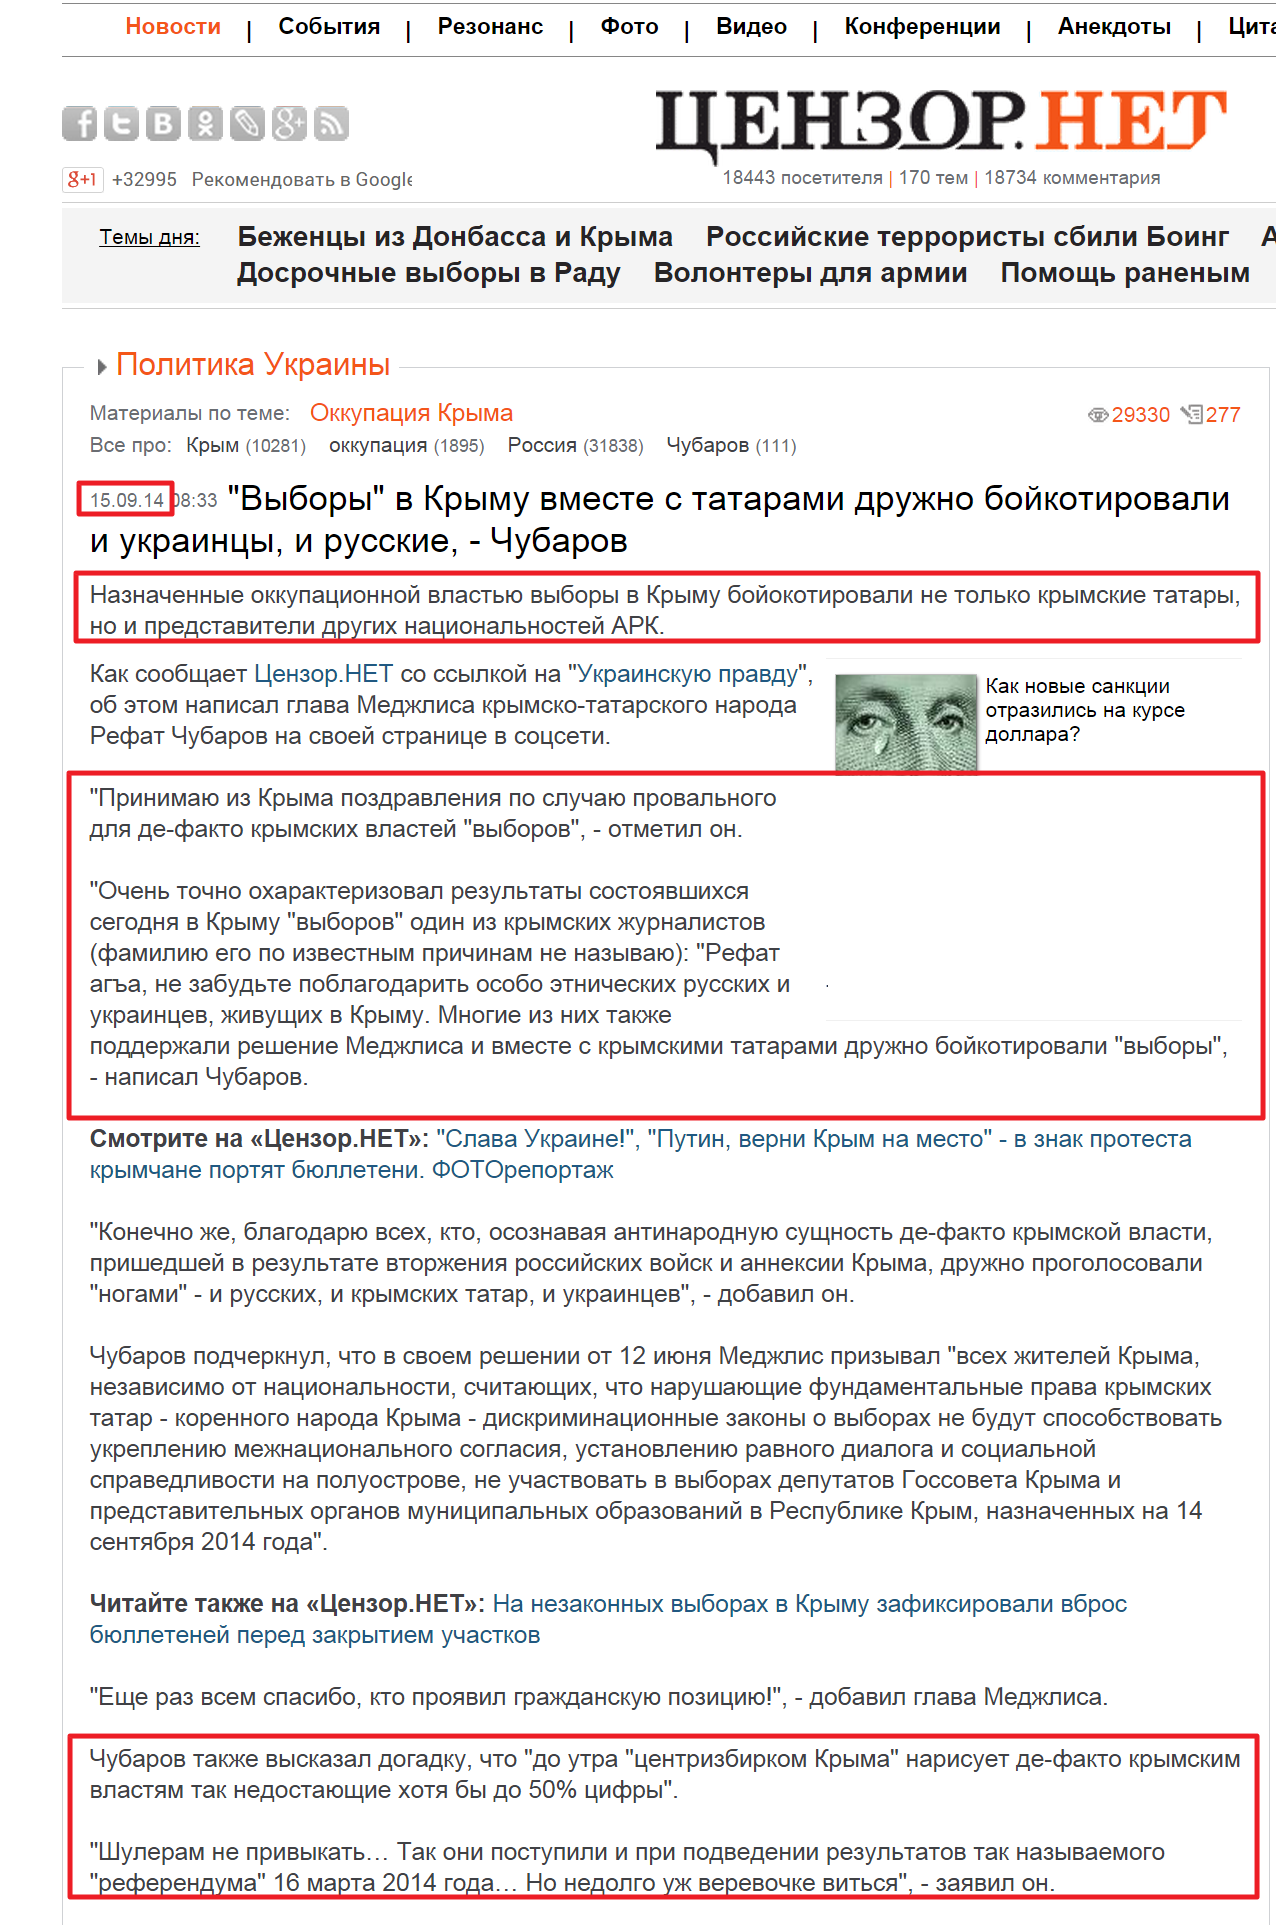 http://censor.net.ua/news/302667/vybory_v_krymu_vmeste_s_tatarami_drujno_boyikotirovali_i_ukraintsy_i_russkie_chubarov